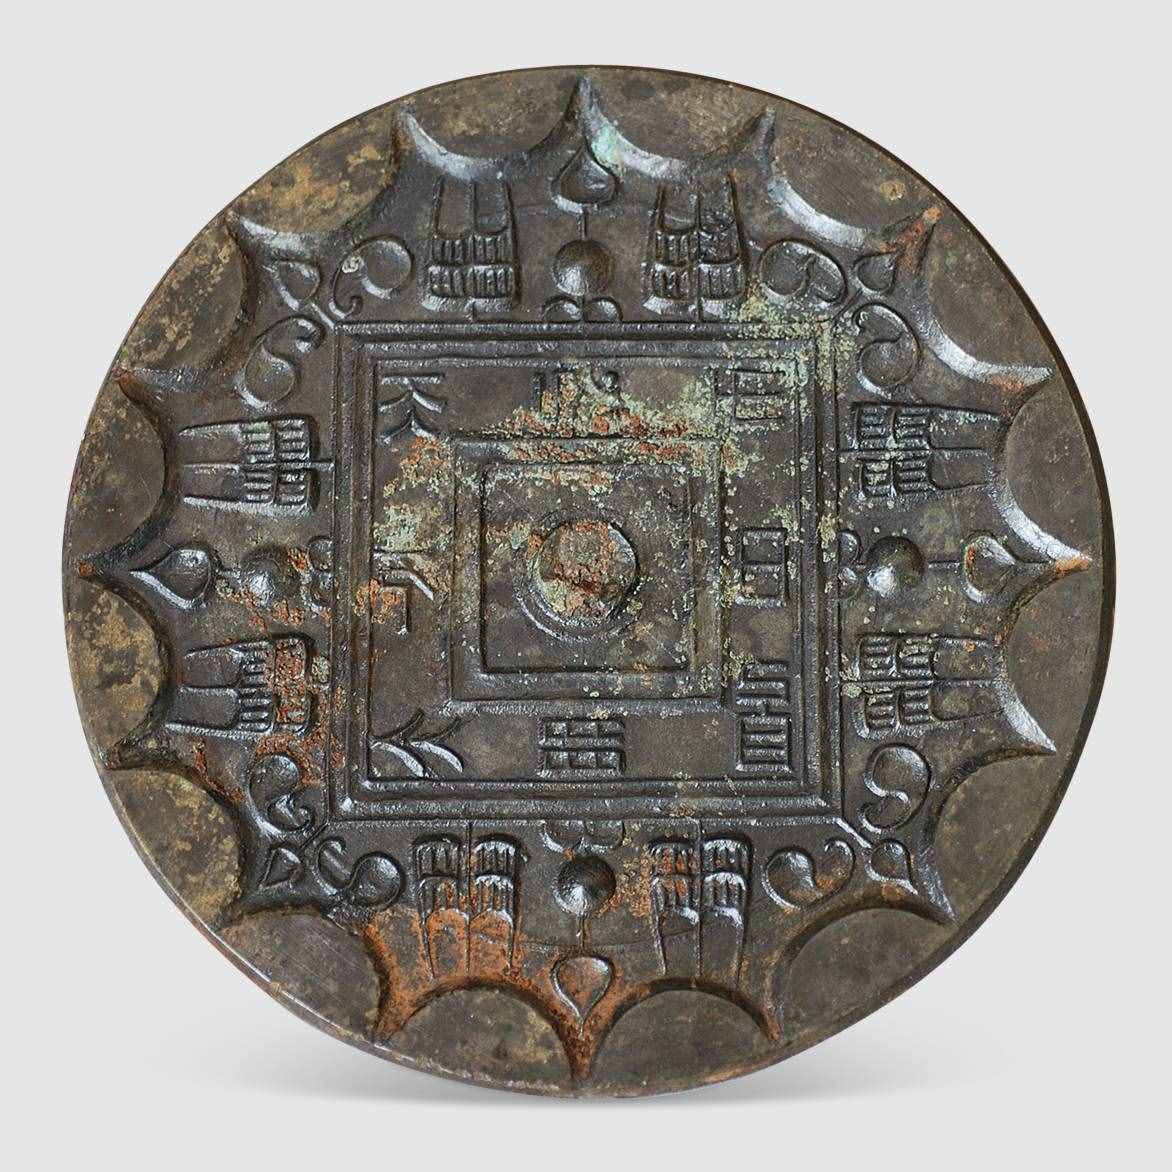 许昌博物馆珍藏汉镜 解读汉代铜镜的四个时期